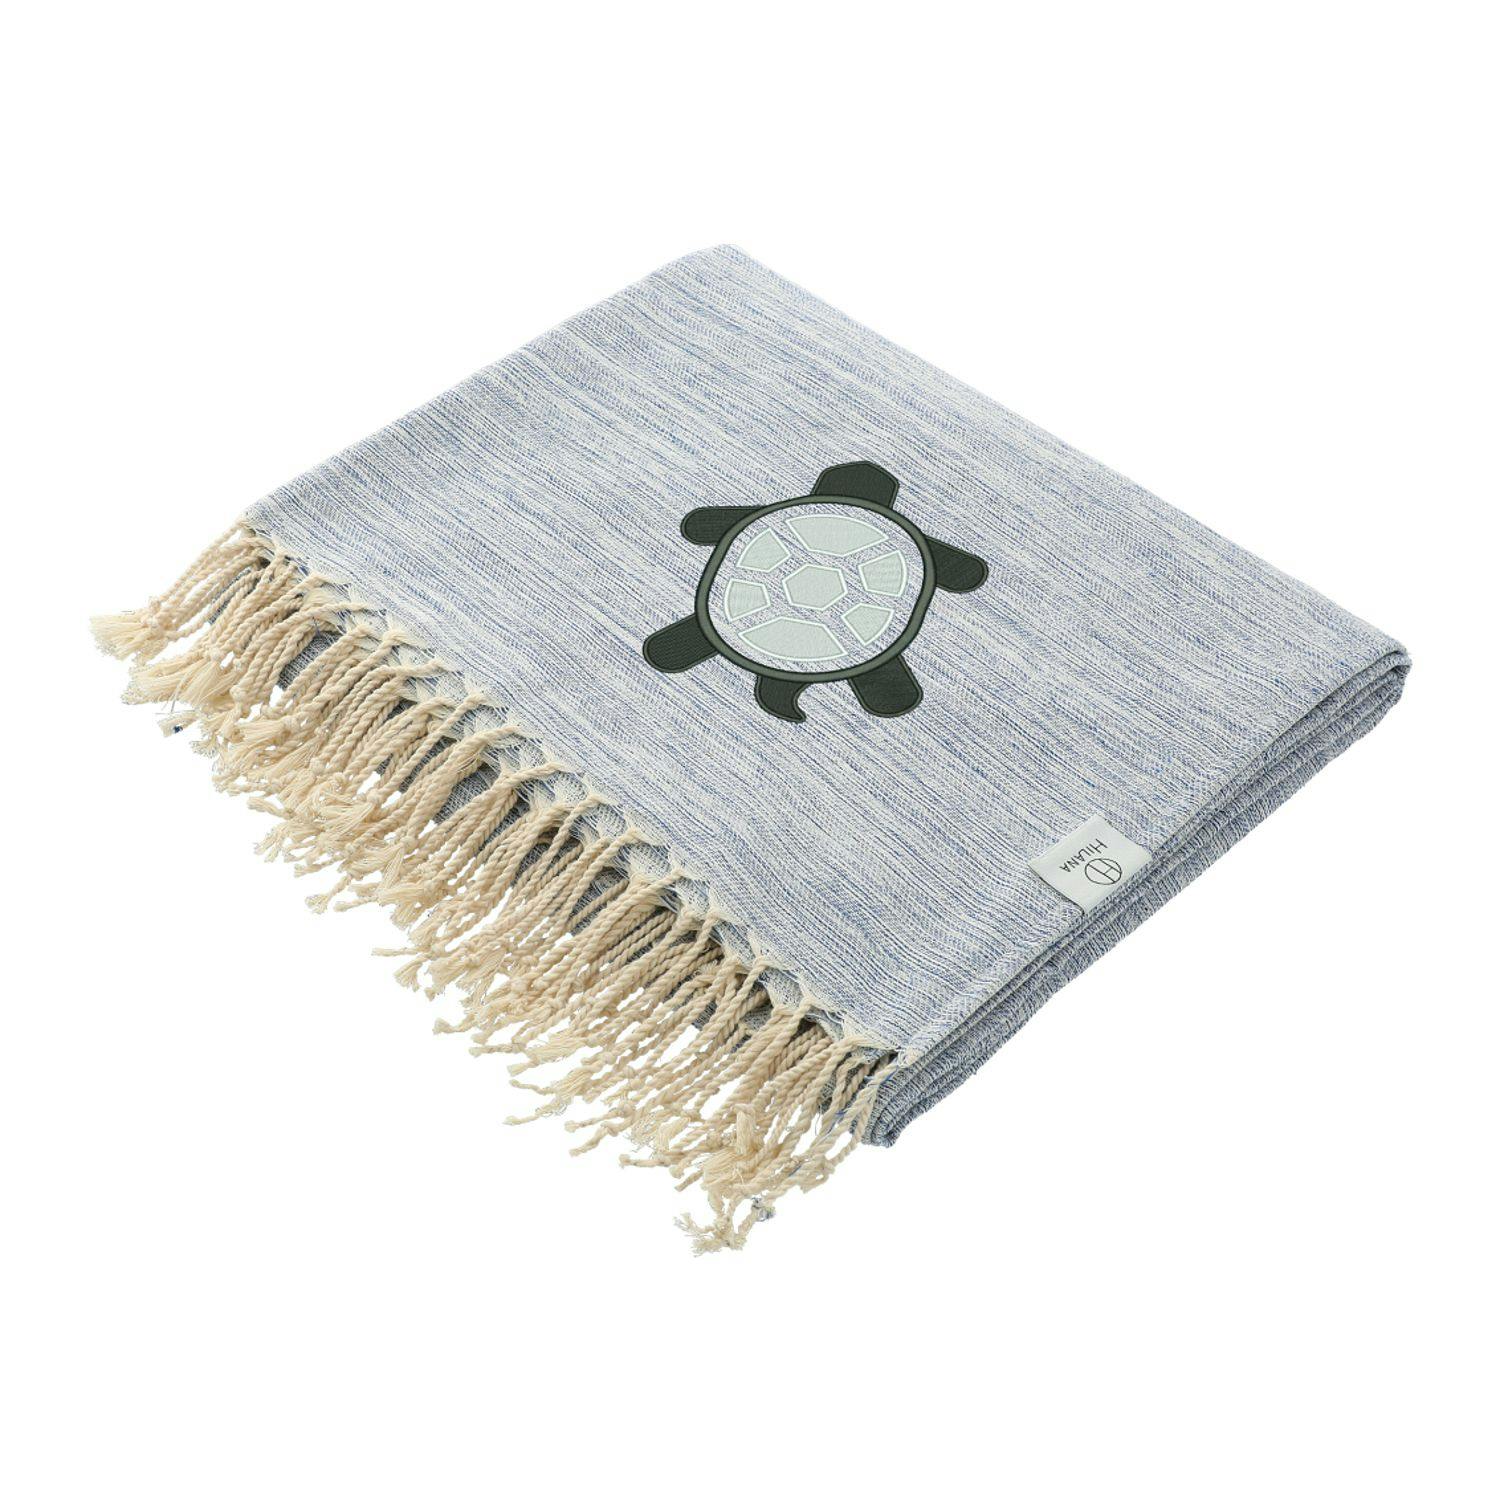 Hilana Upcycled Yalova Ultra Soft Marbled Blanket - additional Image 1